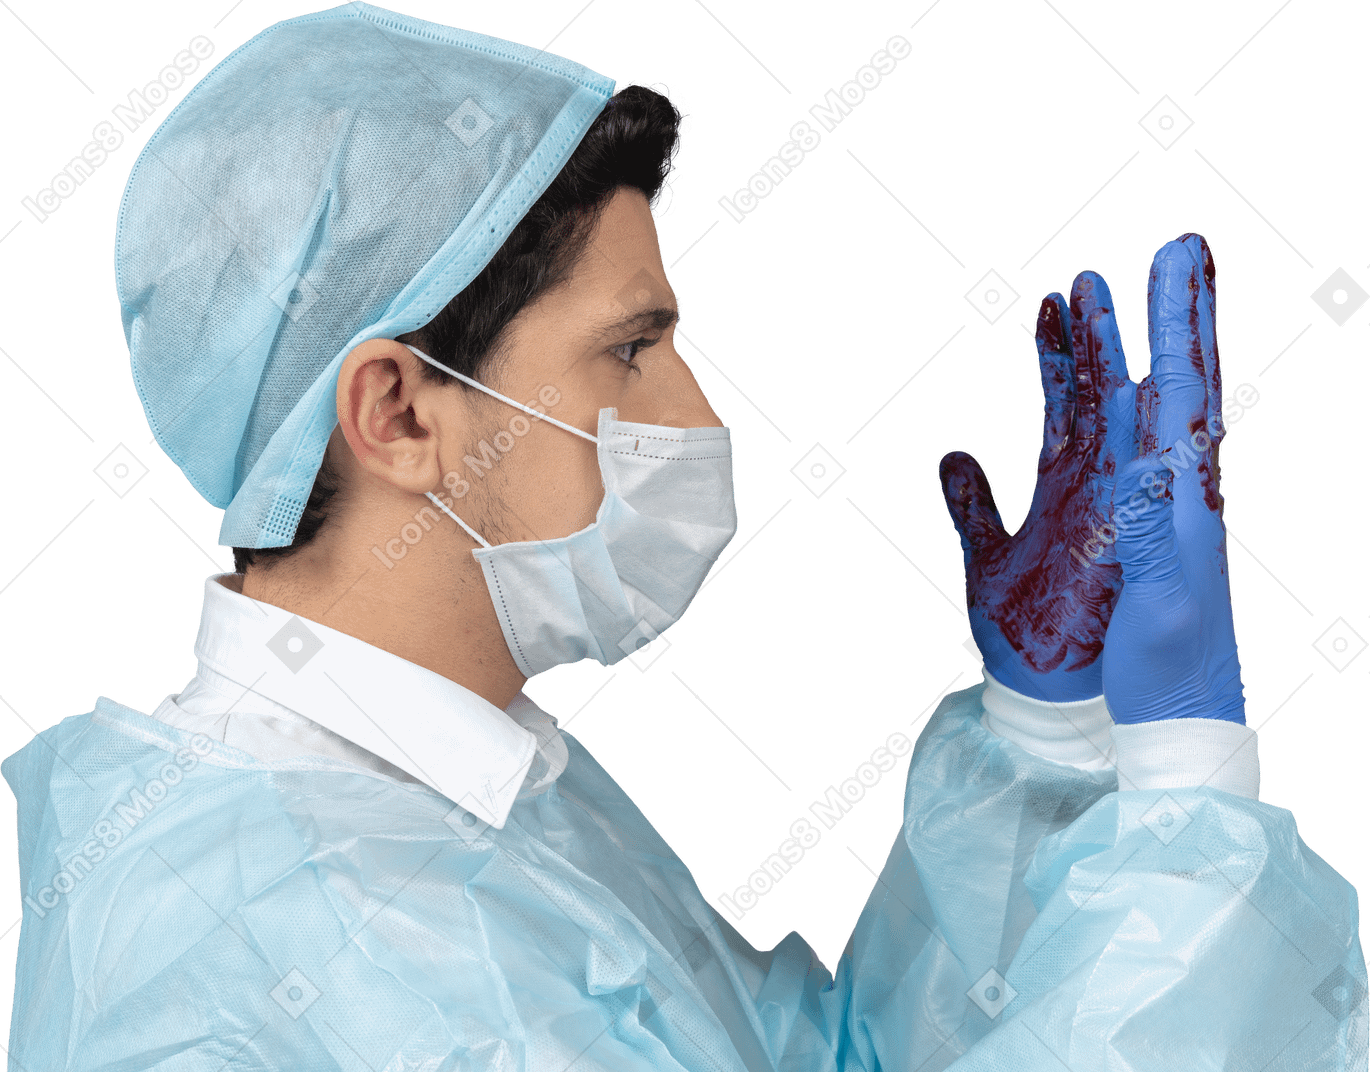 Médecin regardant ses mains couvertes de sang de profil